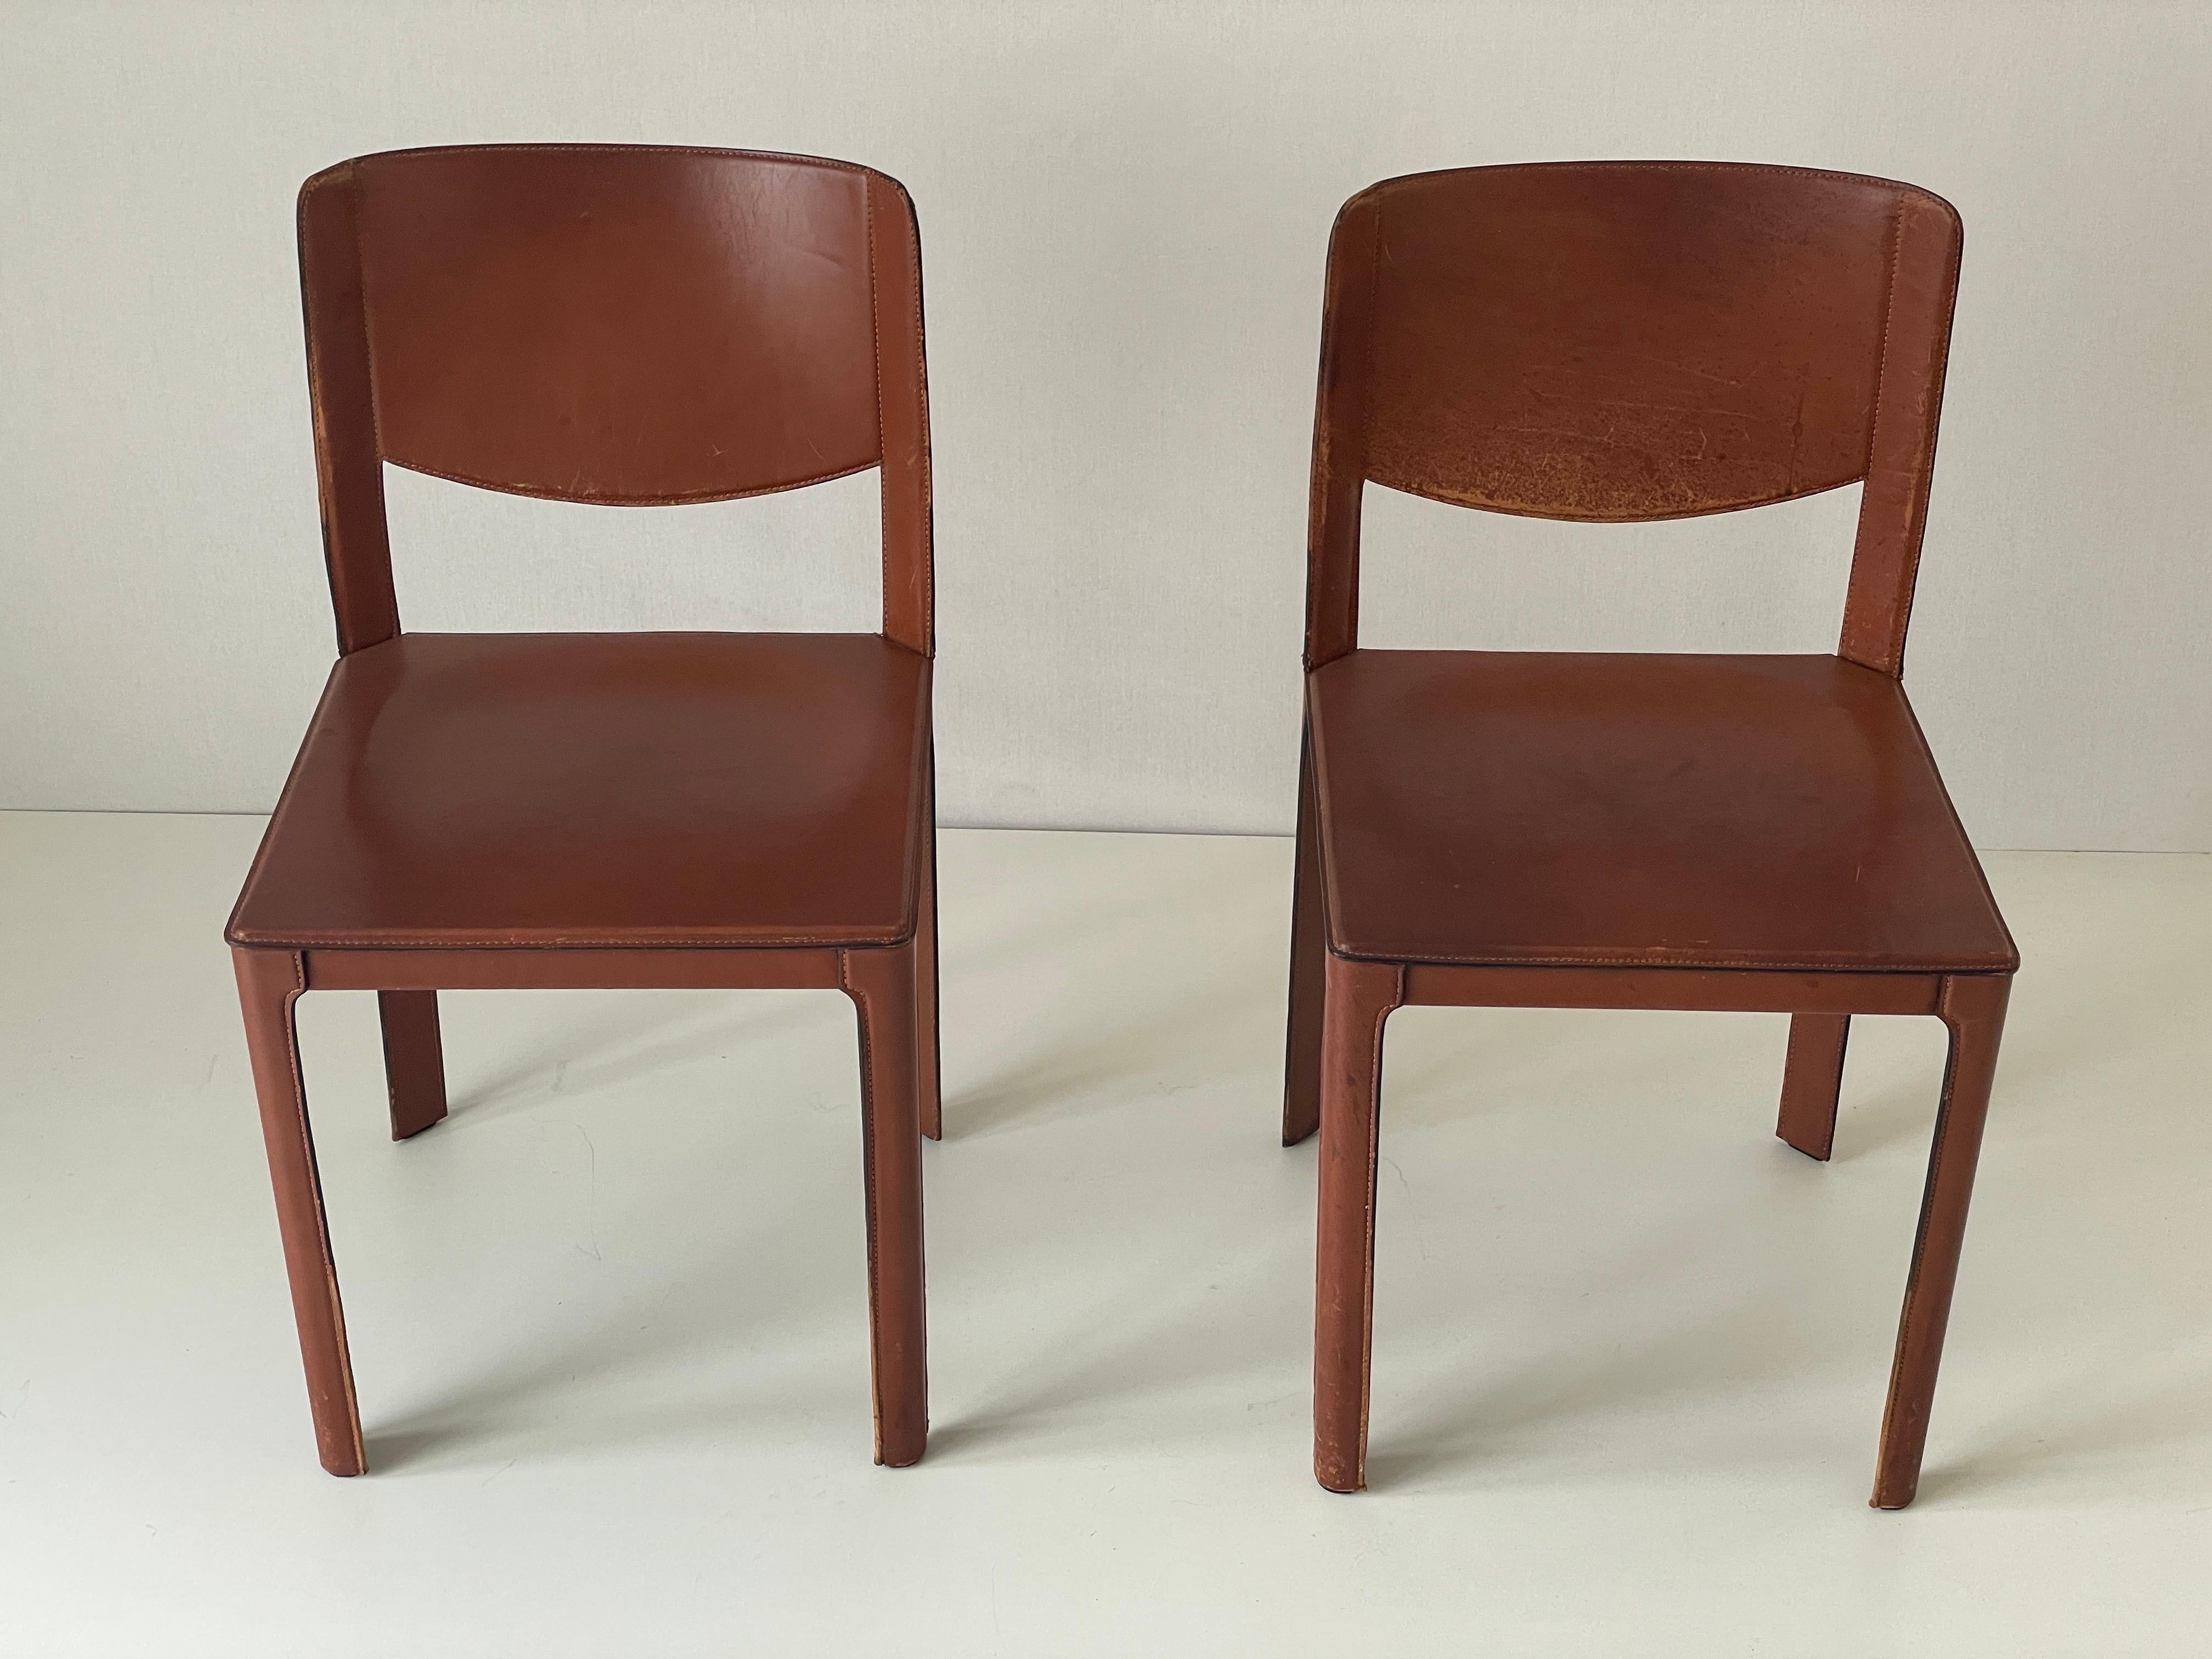 Paar italienische Stühle aus braunem Leder von Matteo Grassi, 1970er Jahre, Italien

Abmessungen:

Höhe: 80 cm
Sitzhöhe: 45 cm
Sitzplätze: 44 cm x 44 cm

Bitte zögern Sie nicht, uns zu fragen, wenn Sie irgendwelche Fragen haben.